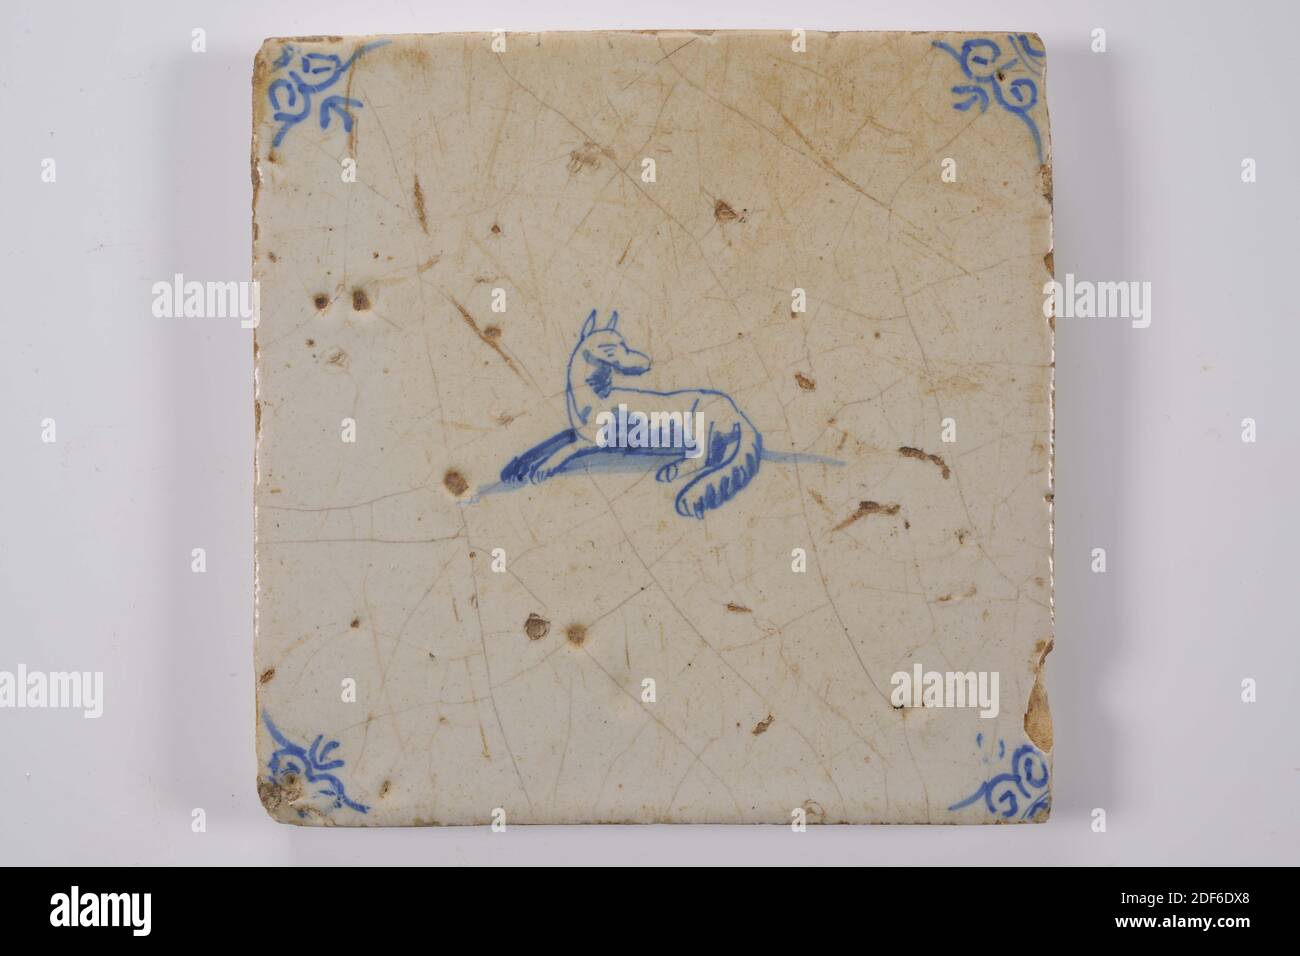 Carreau de mur, Anonyme, entre 1640-1700, glaçure d'étain, faïence, général: 13.2 x 13.4 x 1,2cm (132 x 134 x 12mm), chien, loup, carreau de mur de faïence recouvert de glaçure d'étain et peint en bleu. La tuile montre un loup couché ou un chien orienté à gauche, au centre. La tuile a une tête de boeuf comme un motif de coin, 1995 Banque D'Images